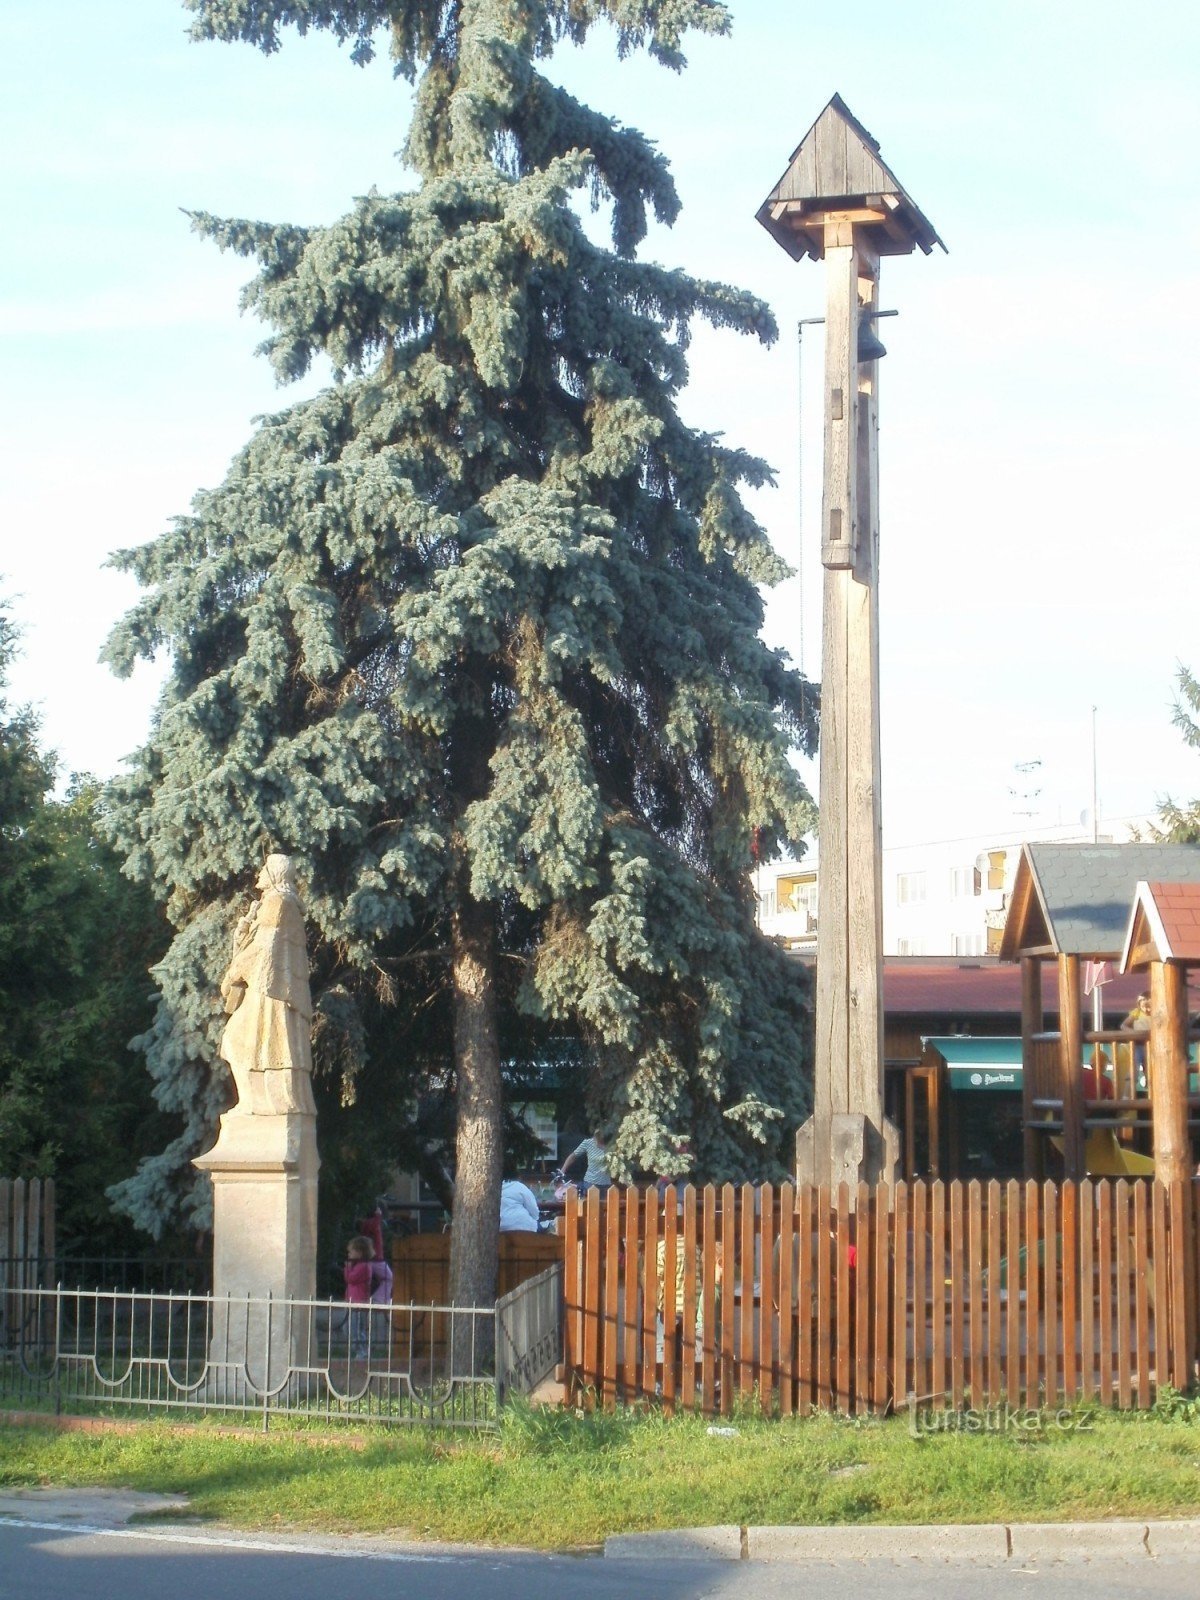 Hradec Králové - zvonik na nasipu